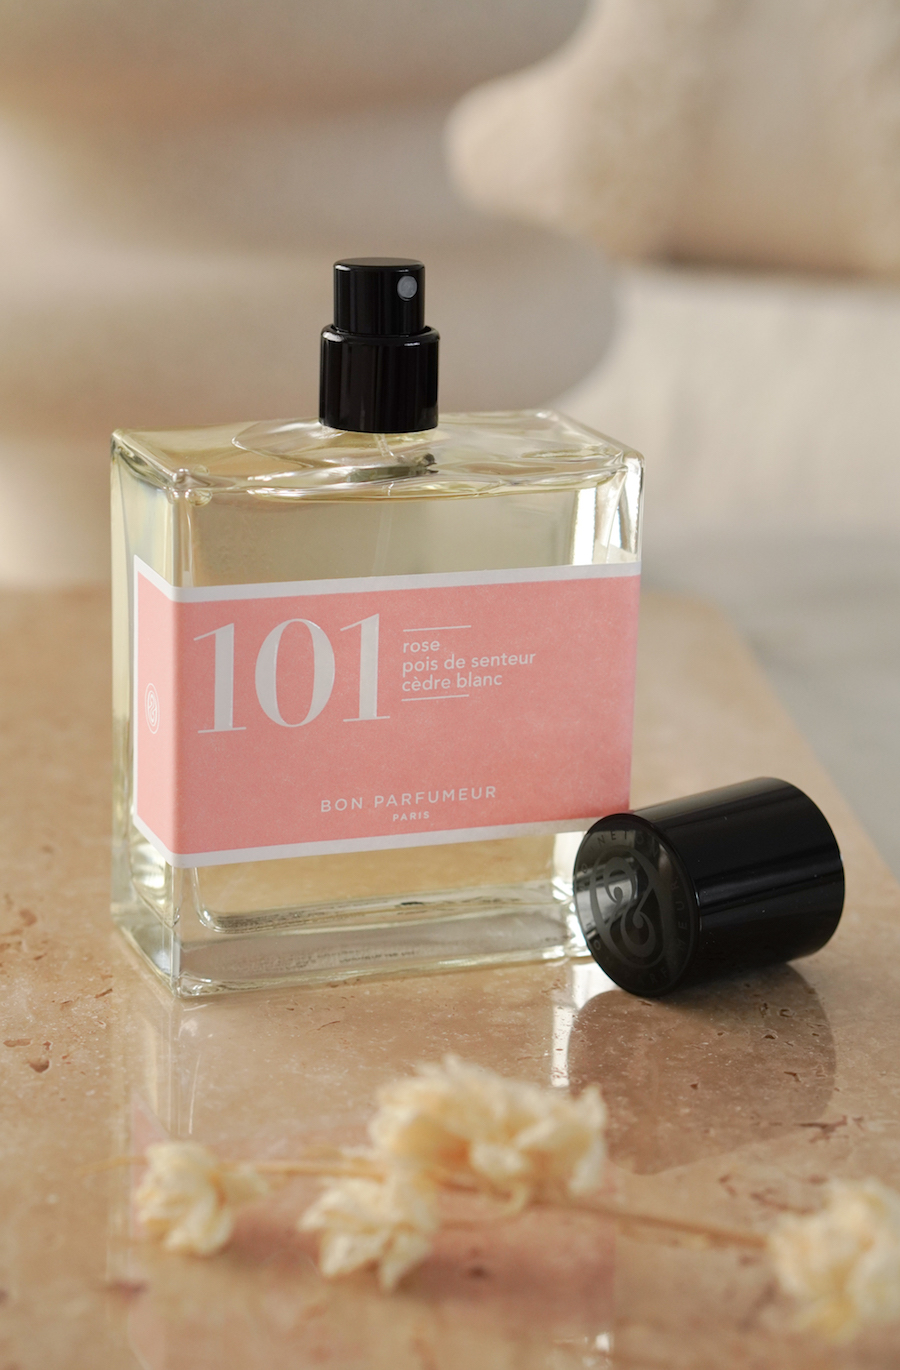 Bon Parfumeur 101 rose eau de parfum